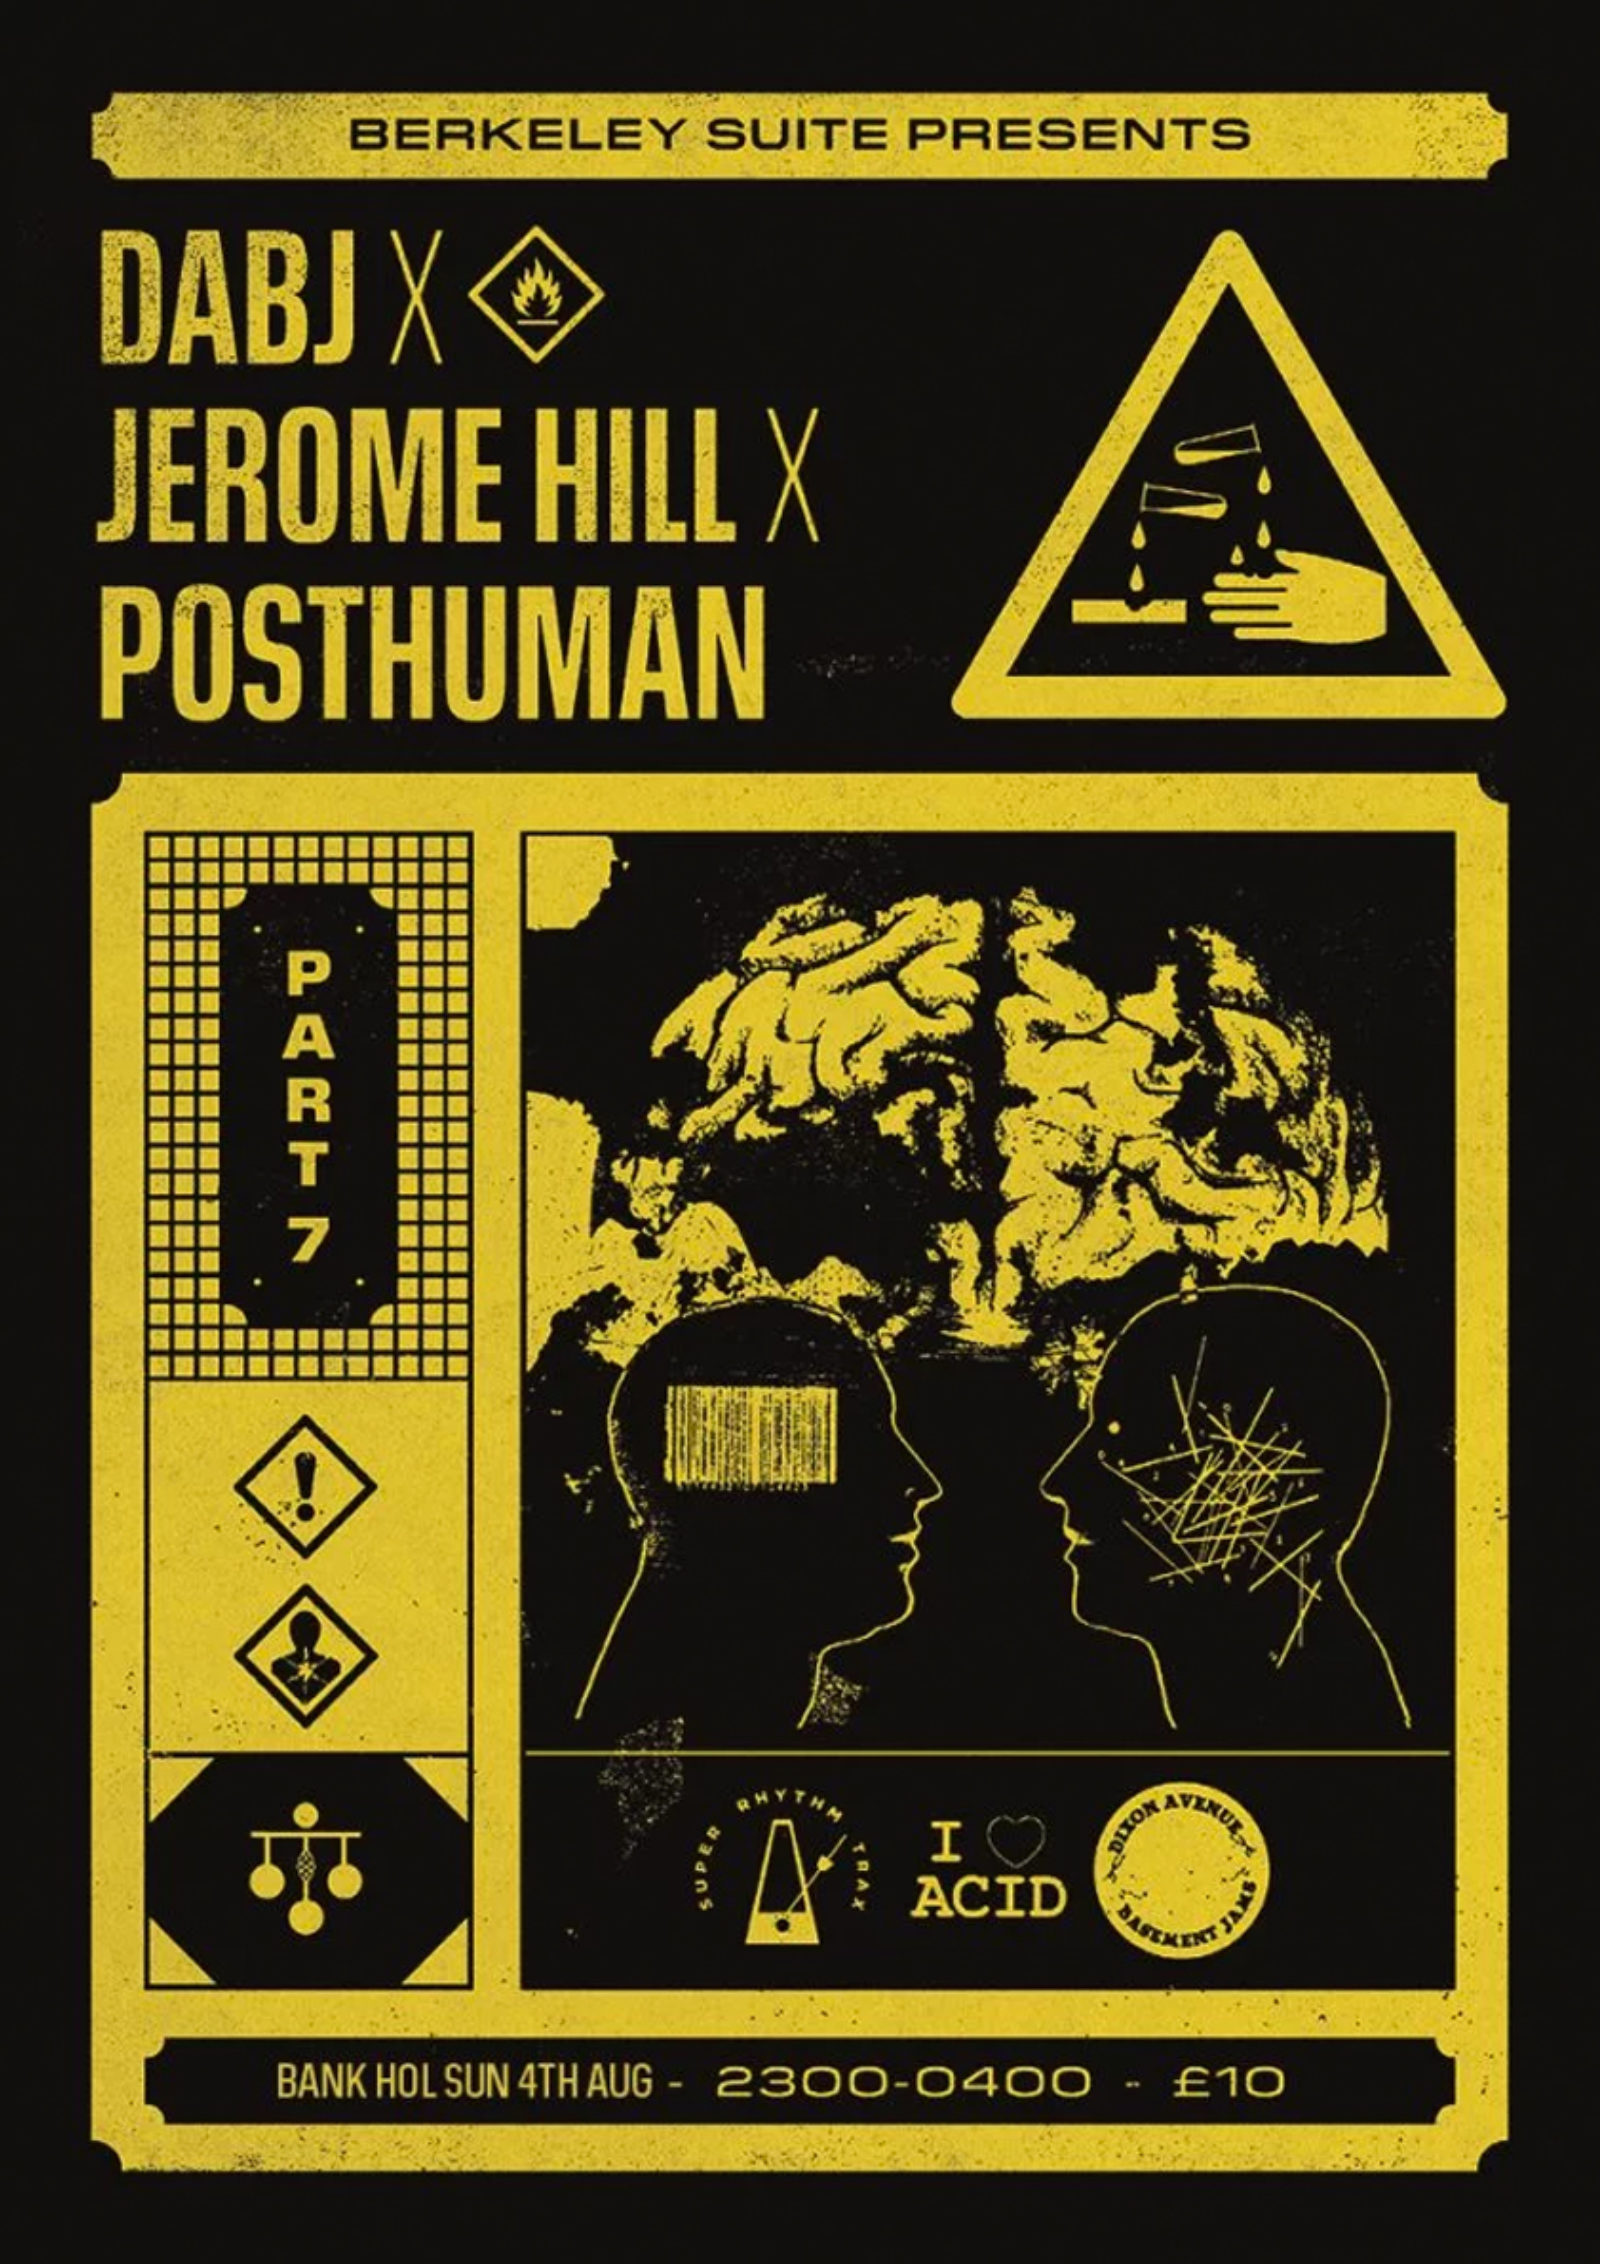 DABJ x Jerome Hill x Posthuman